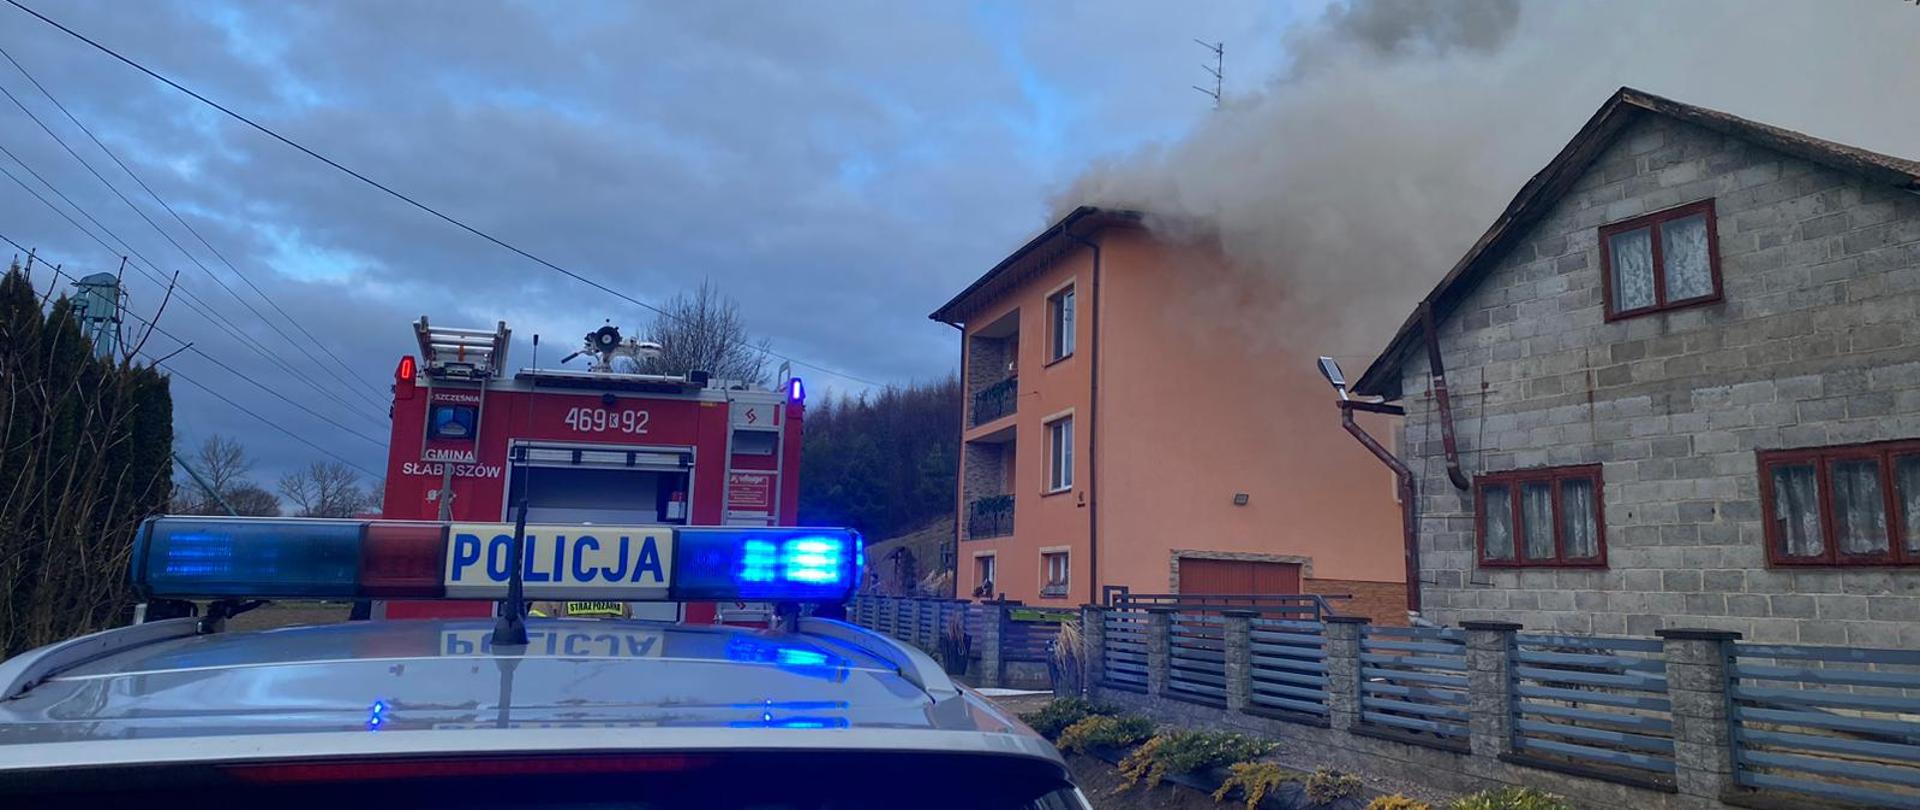 Na zdjęciu widoczy rozwinięty pożar poddasza w domu jednorodzinnego obo zapakowane samochody gaśnicze oraz radiowóz Polcji